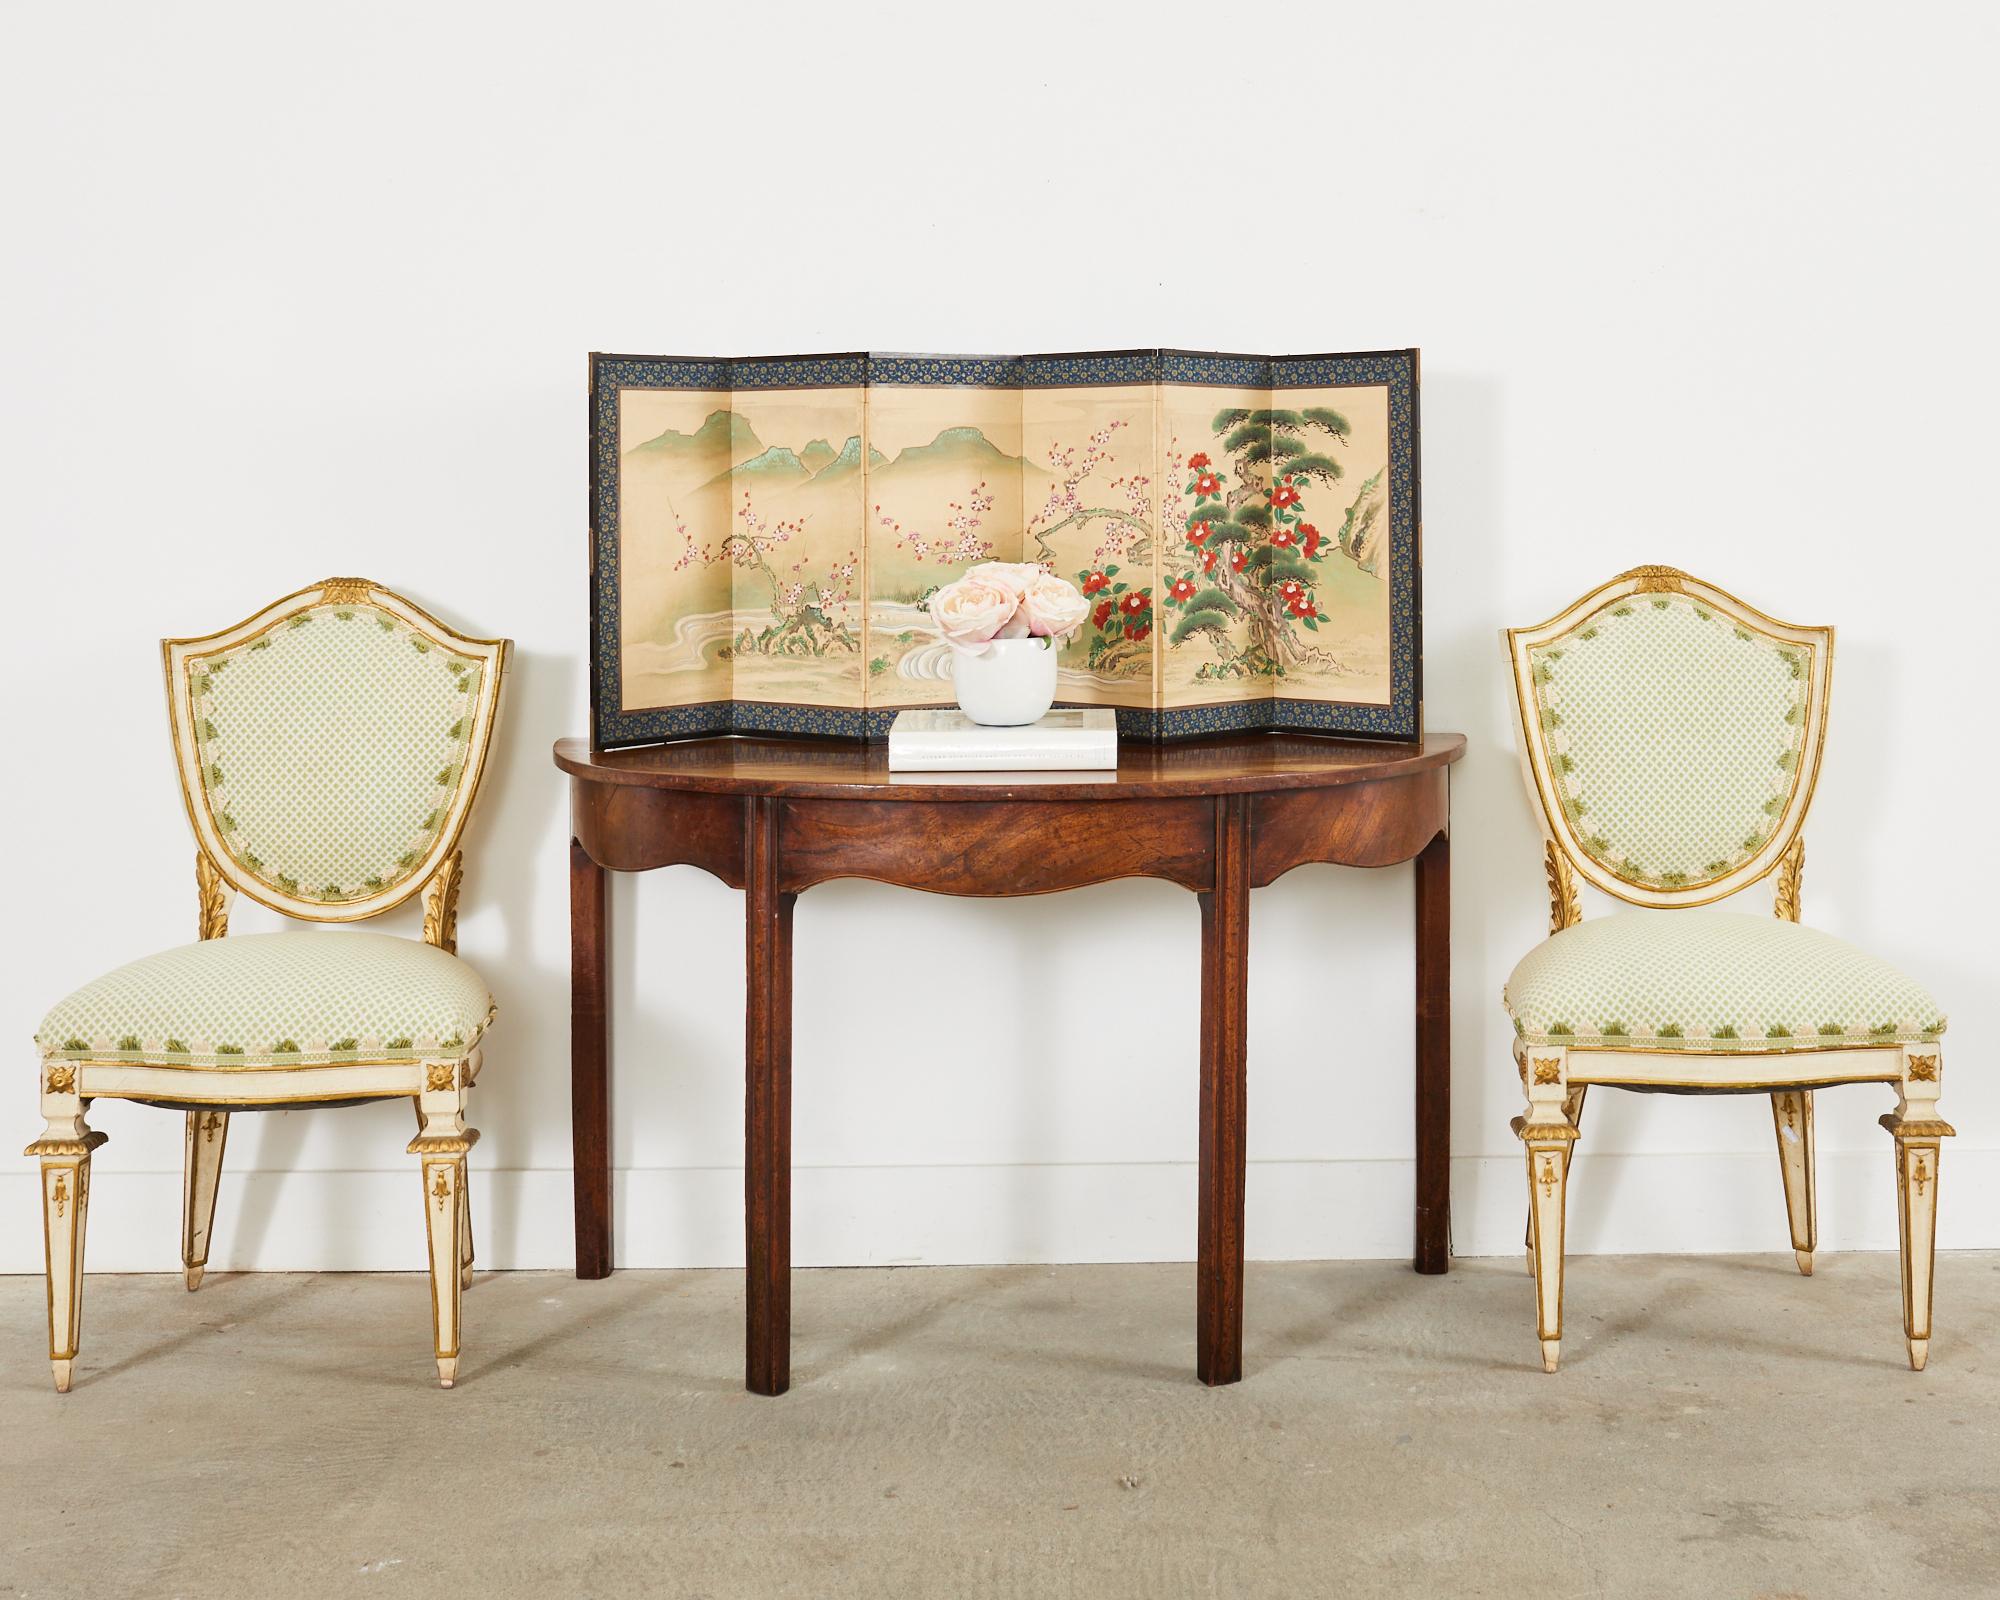 Außergewöhnlicher Satz von vier handwerklich bemalten italienischen Esszimmerstühlen im venezianischen Stil. Die Stühle haben eine schildförmige oder kartuschenförmige Rückenlehne. Die bemalten Rahmen sind mit paketvergoldeten Akzenten und